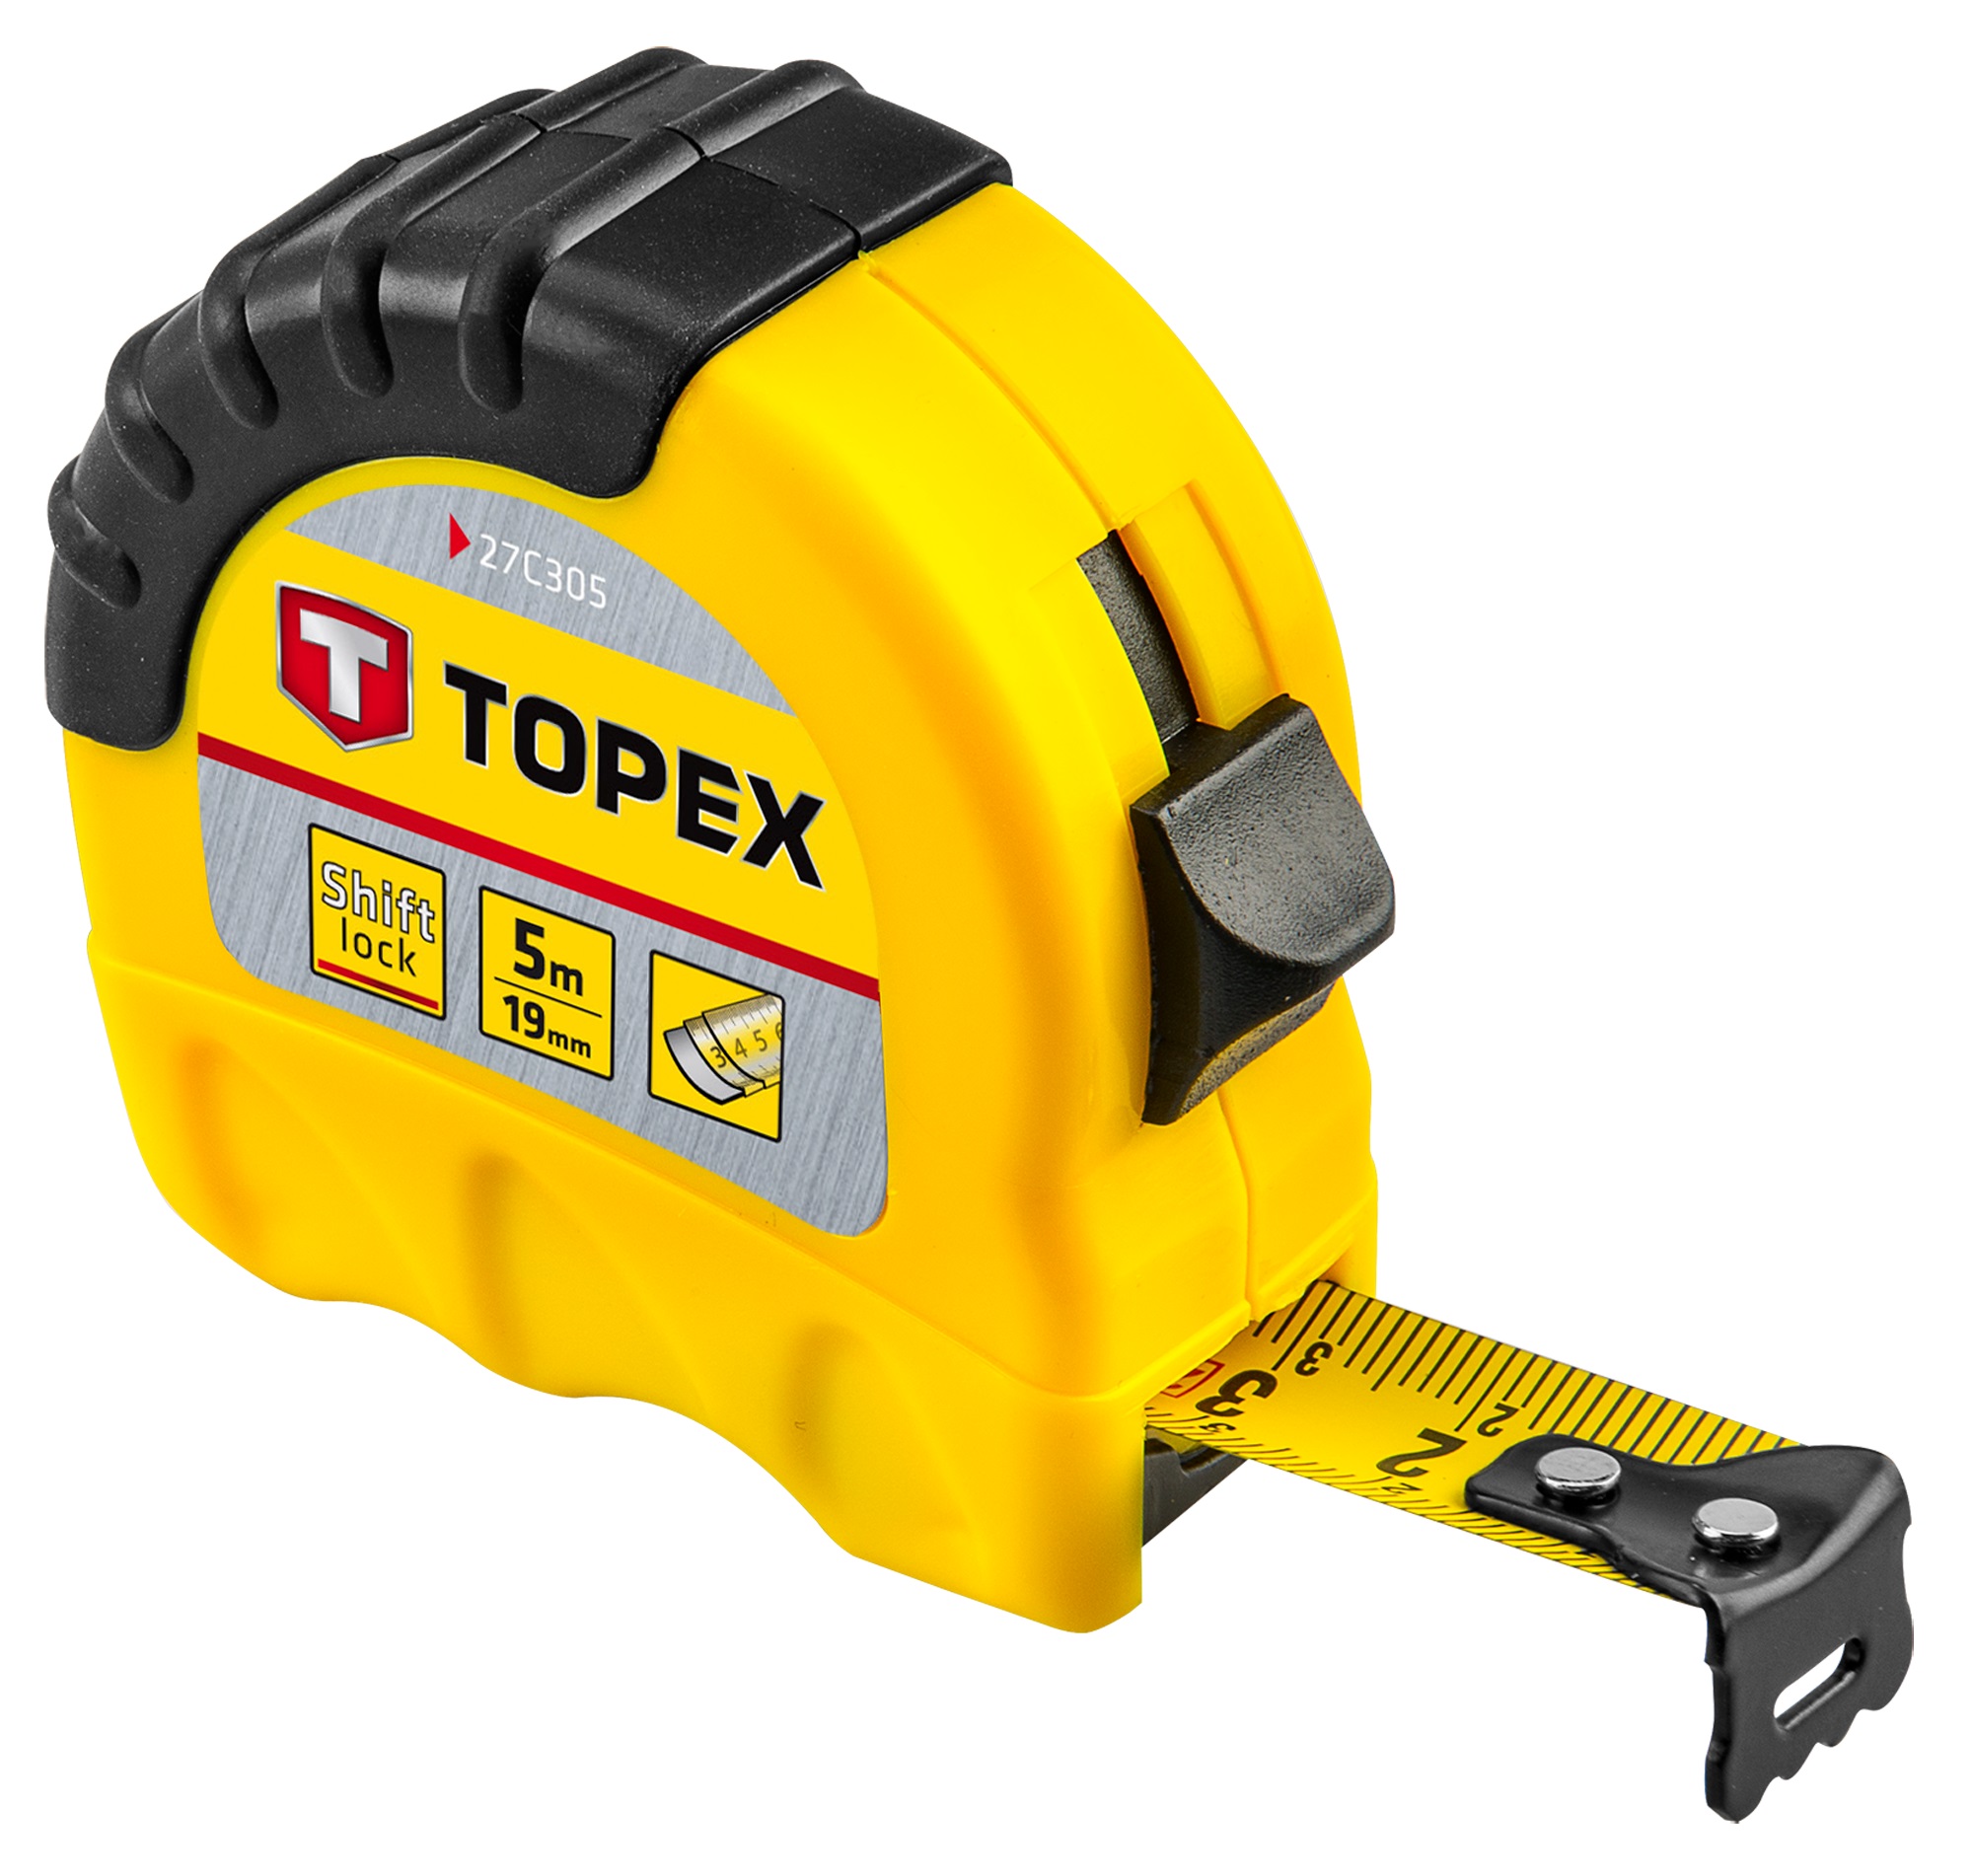 Инструкция рулетка Topex 27C305